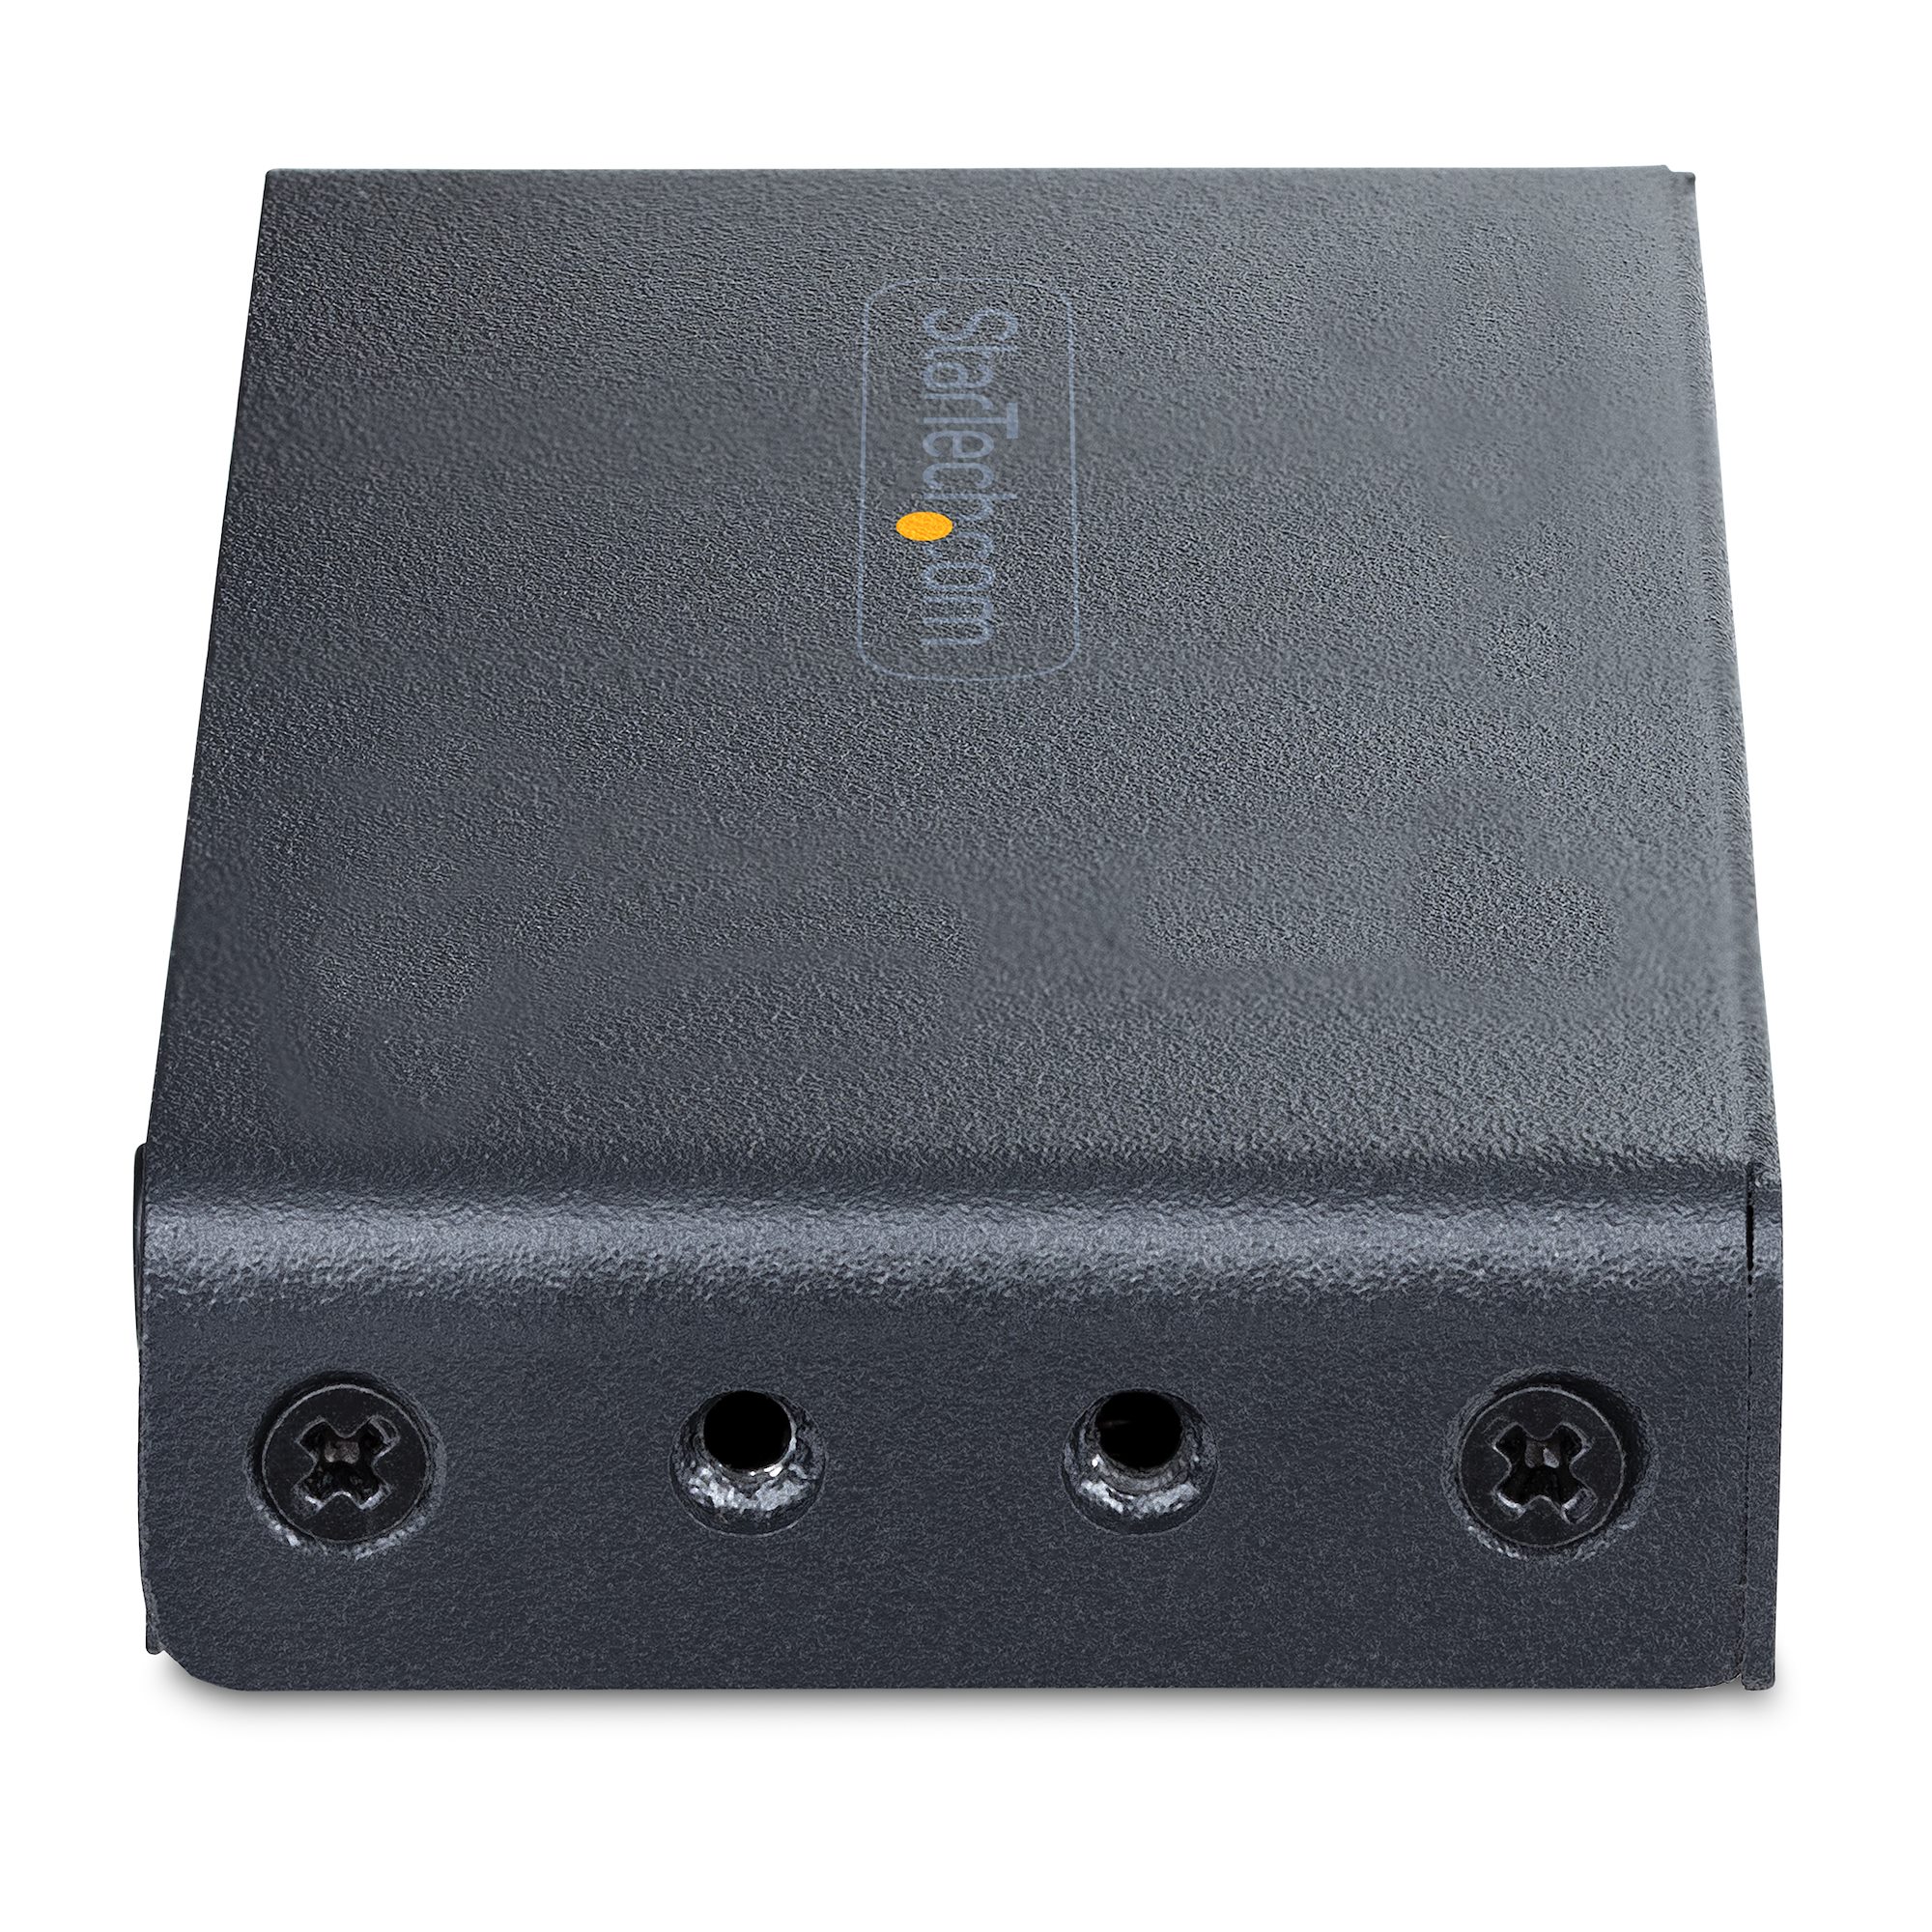 StarTech.com Switch Conmutador HDMI de 4 Puertos de 8K a 60Hz